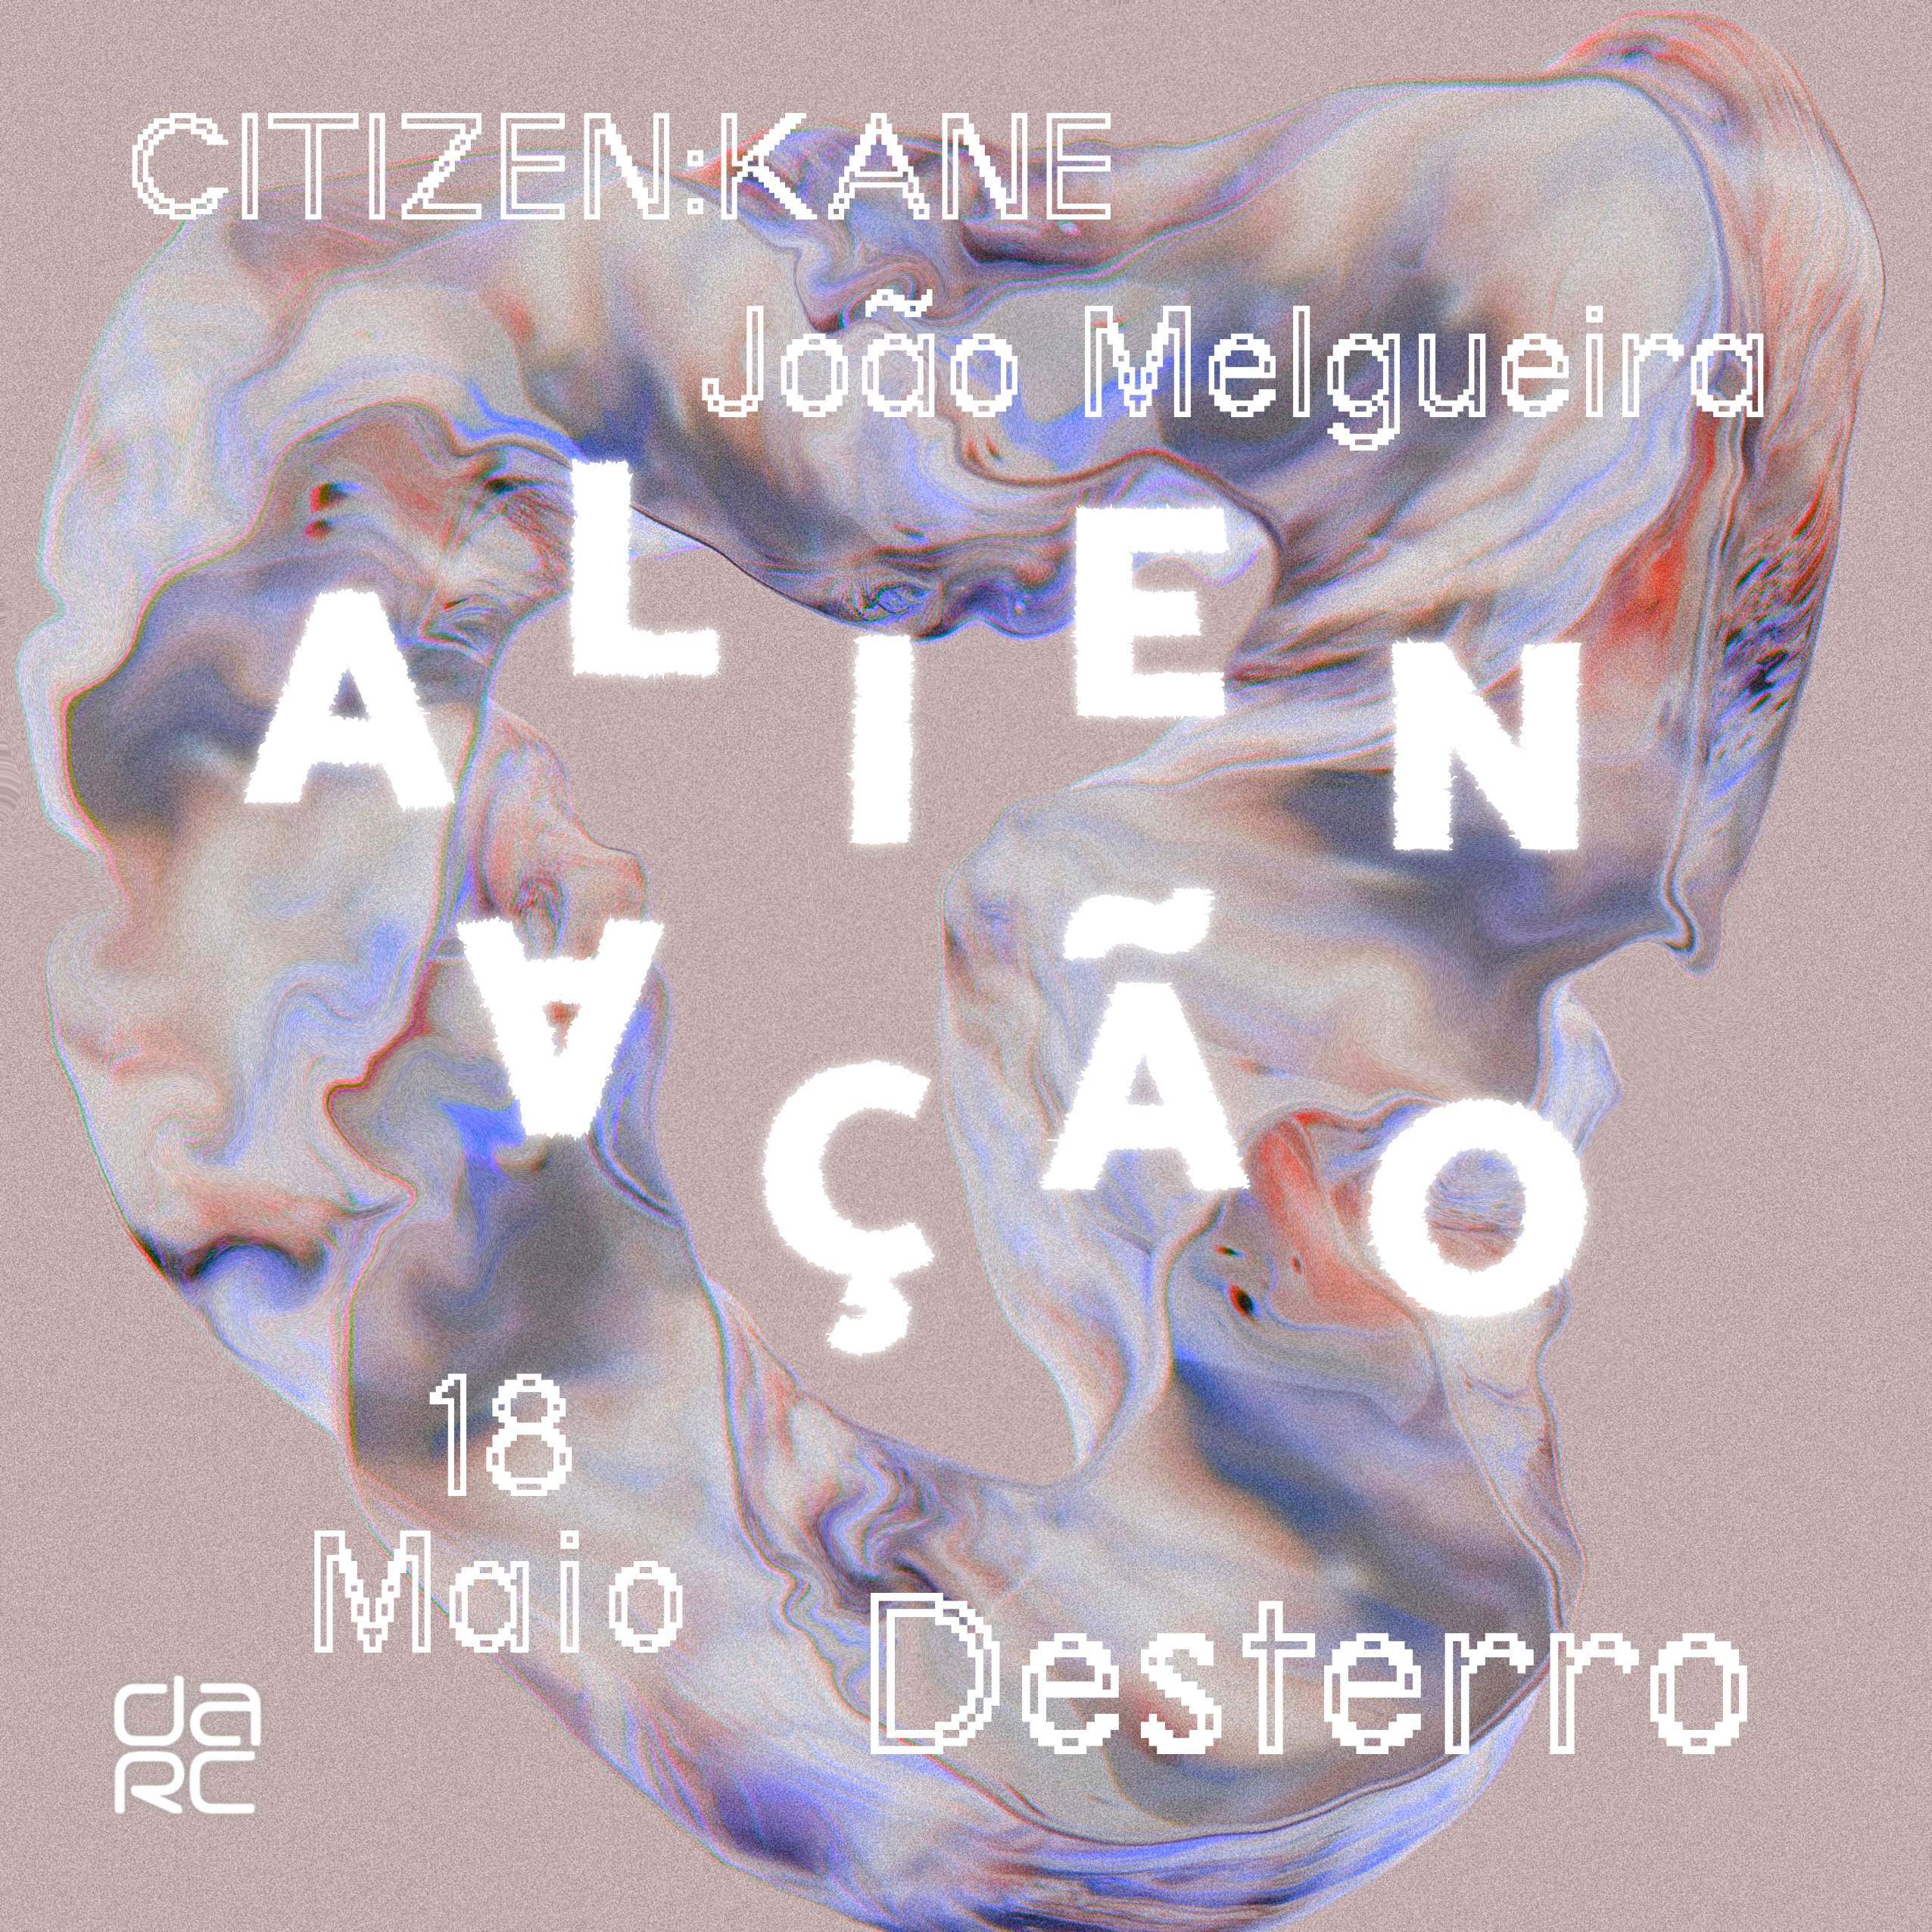 Alienação - Desterro #13 with Citizen:Kane & João Melgueira - Página frontal